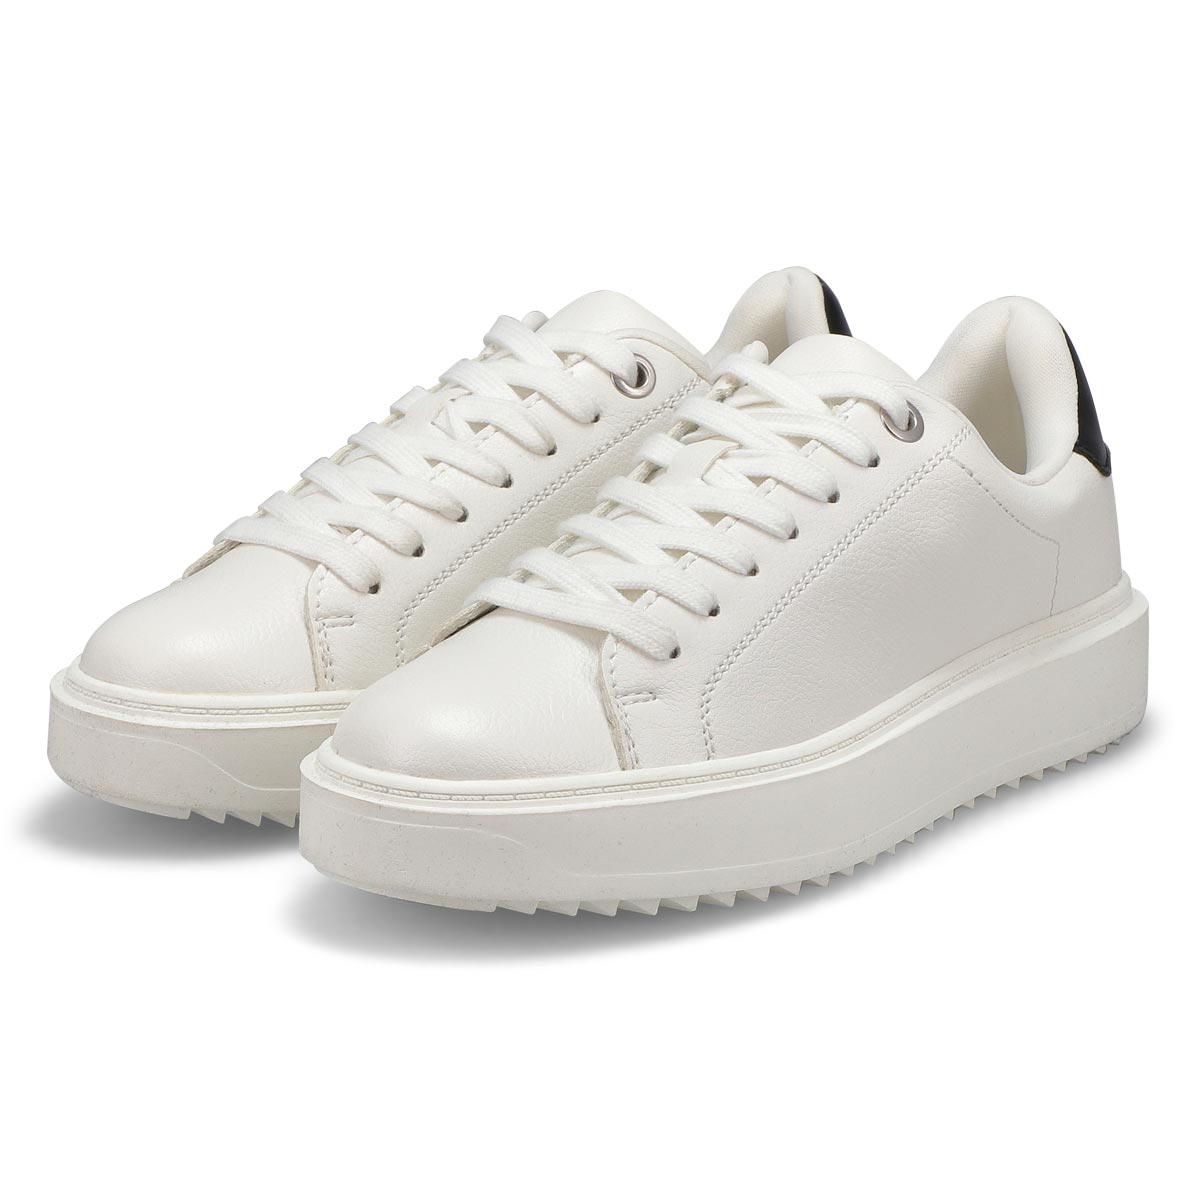 Steve Madden Women's Catcher Sneaker - White | SoftMoc.com